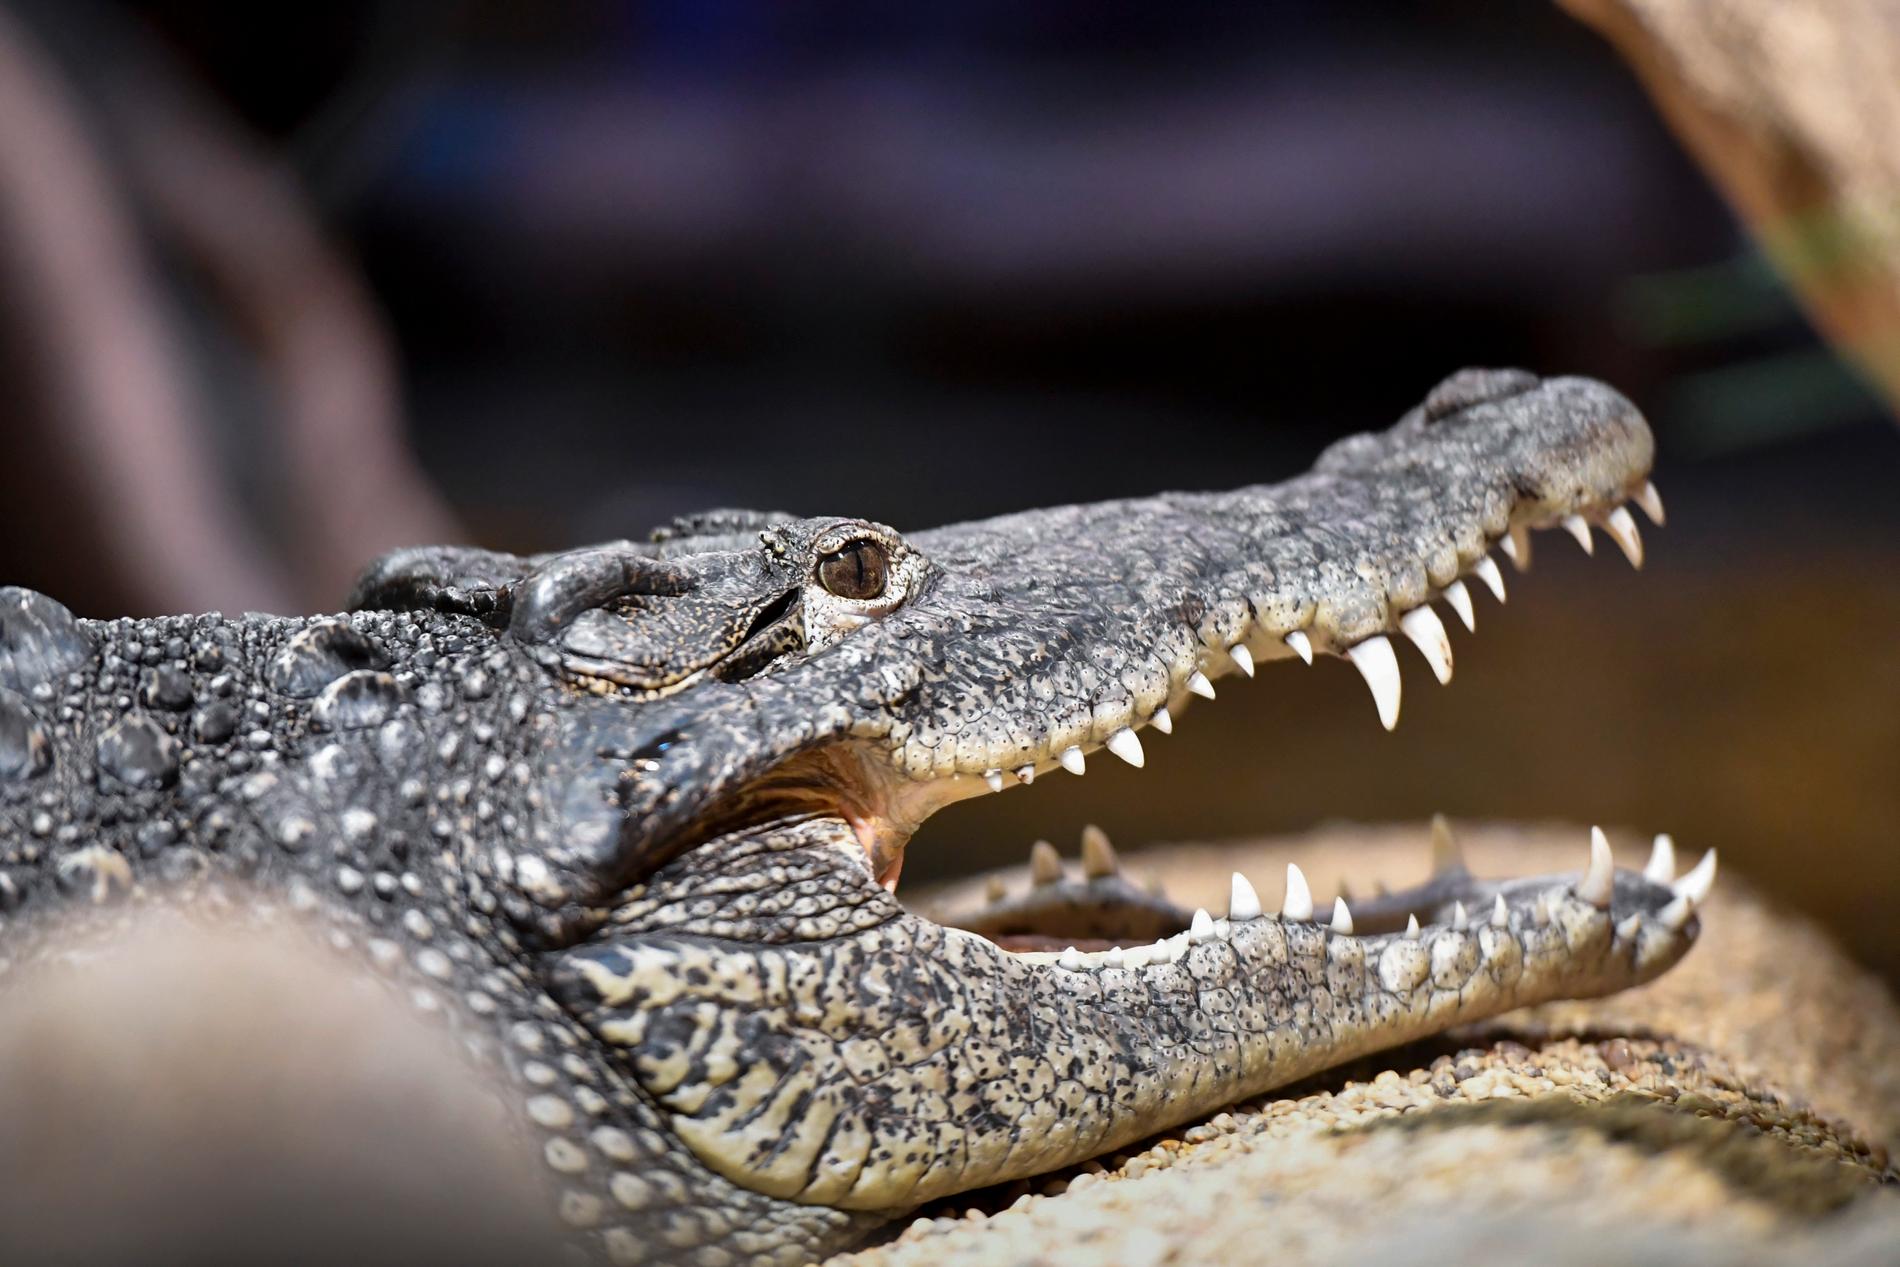 Vid ett tillslag i en fastigheten i skånska Löberöd 2018 hittades över 800 ödlor, krokodiler och andra reptiler. Nu åtalas en man för bland annat grovt artskyddsbrott. Arkivbild.